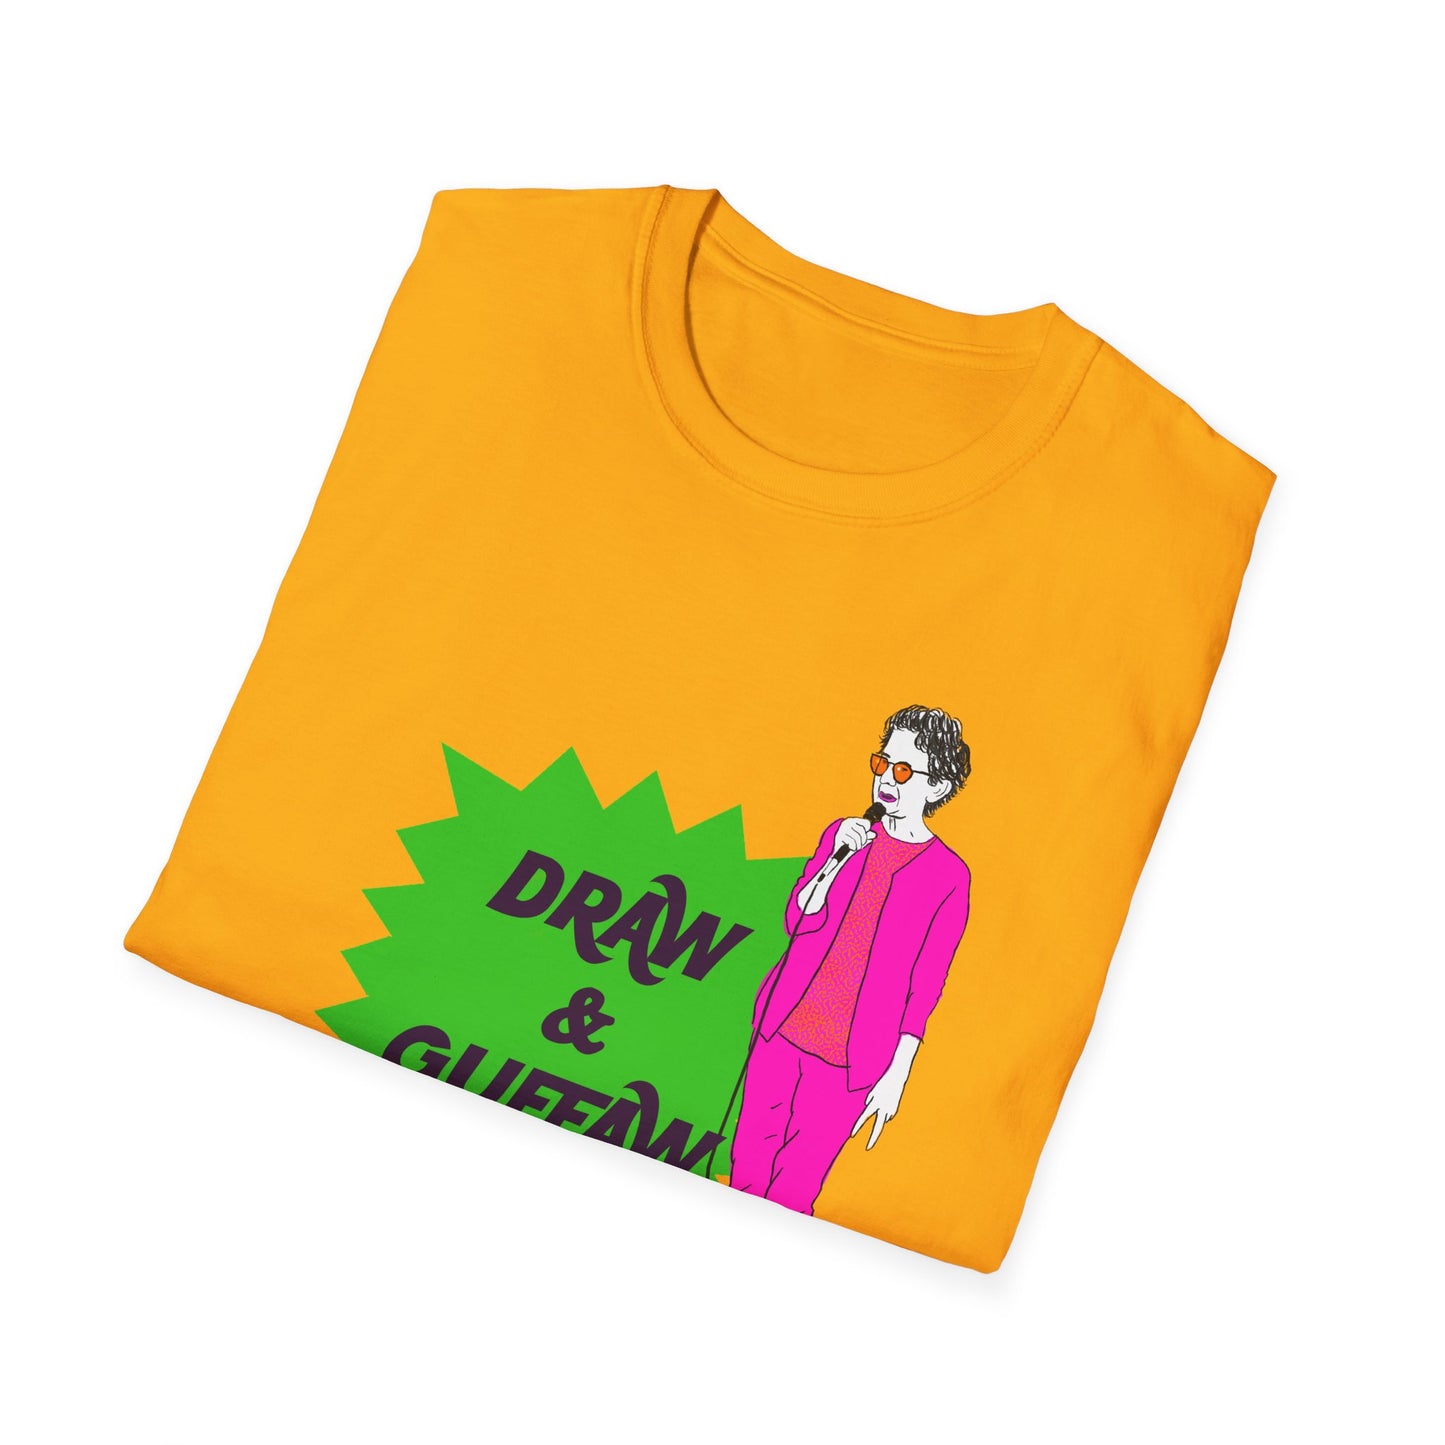 Draw and Guffaw Unisex Softstyle T-Shirt